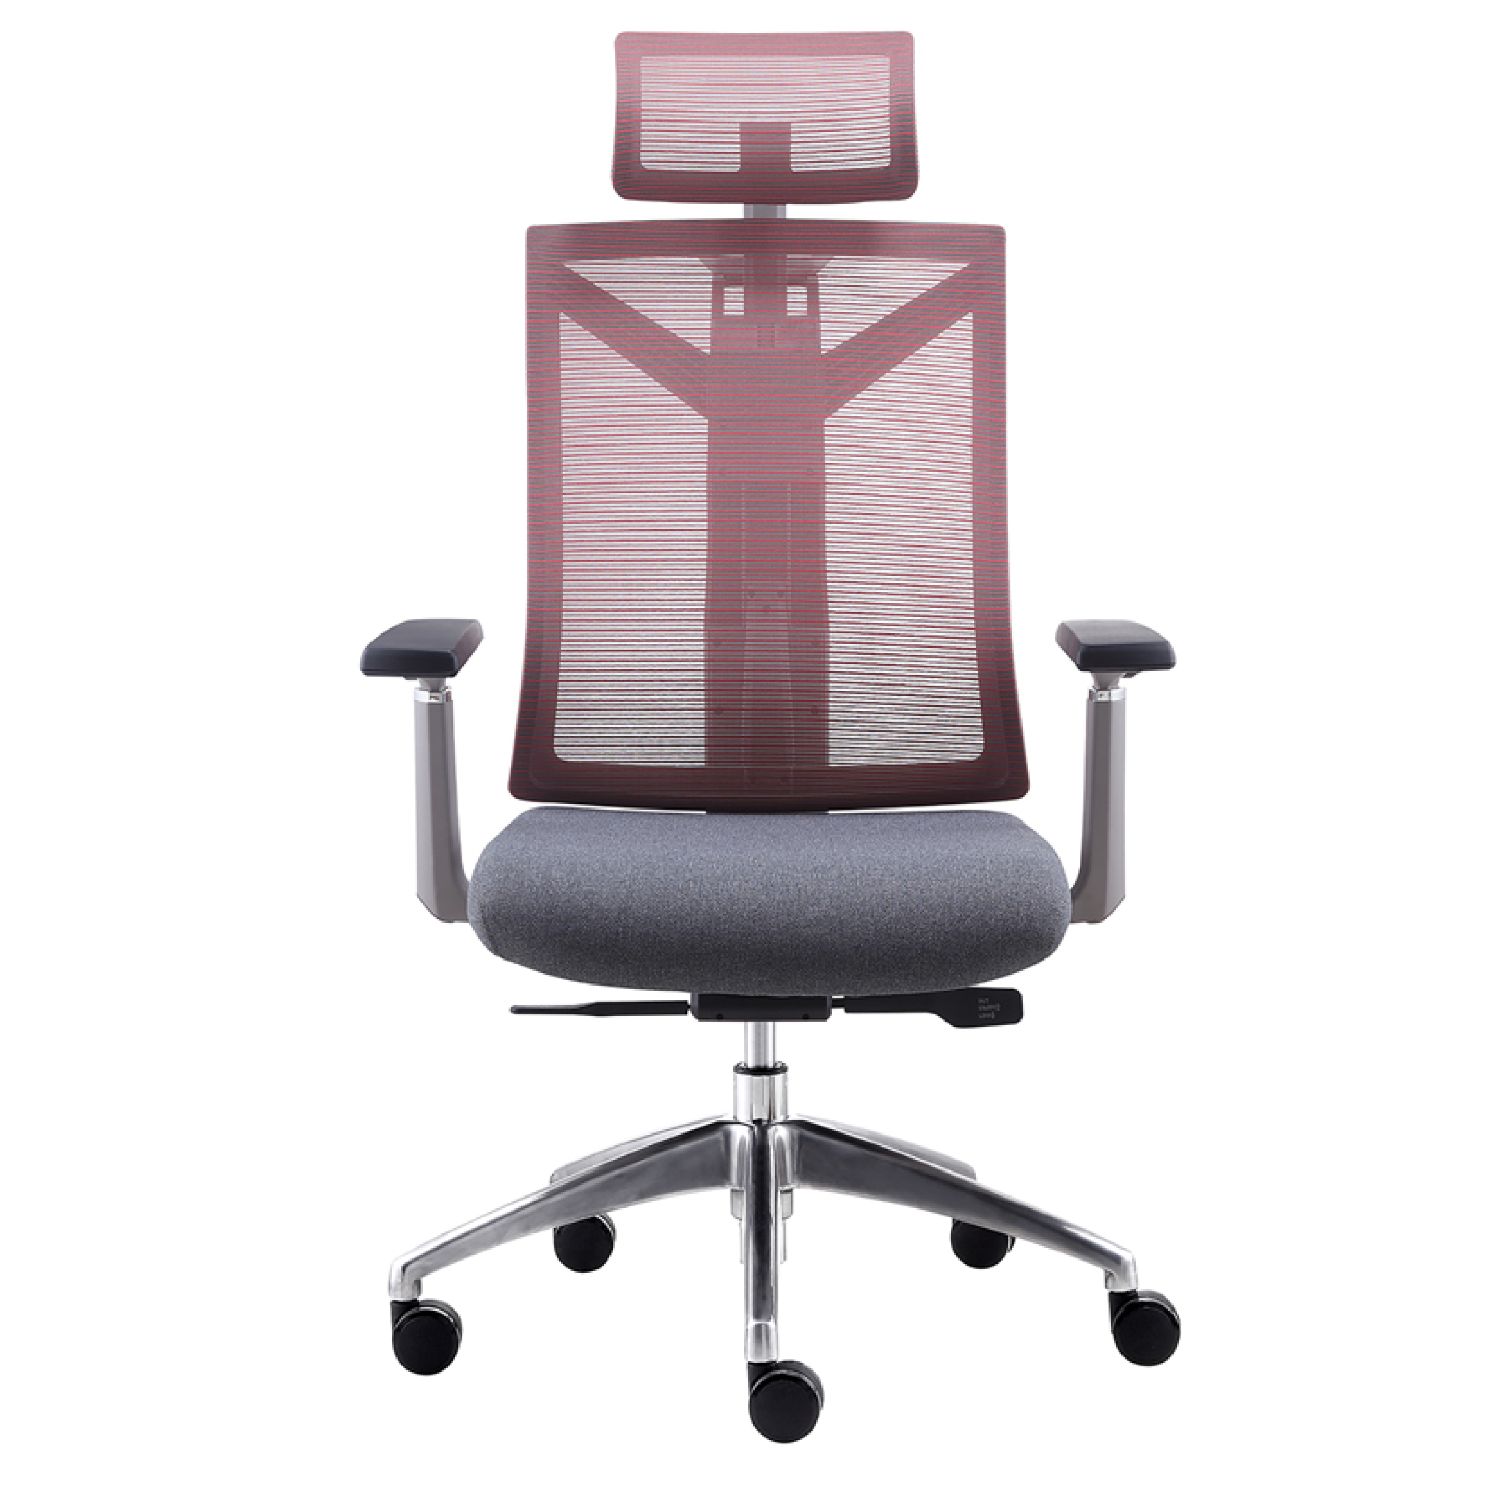 Mesh chair-SK3165